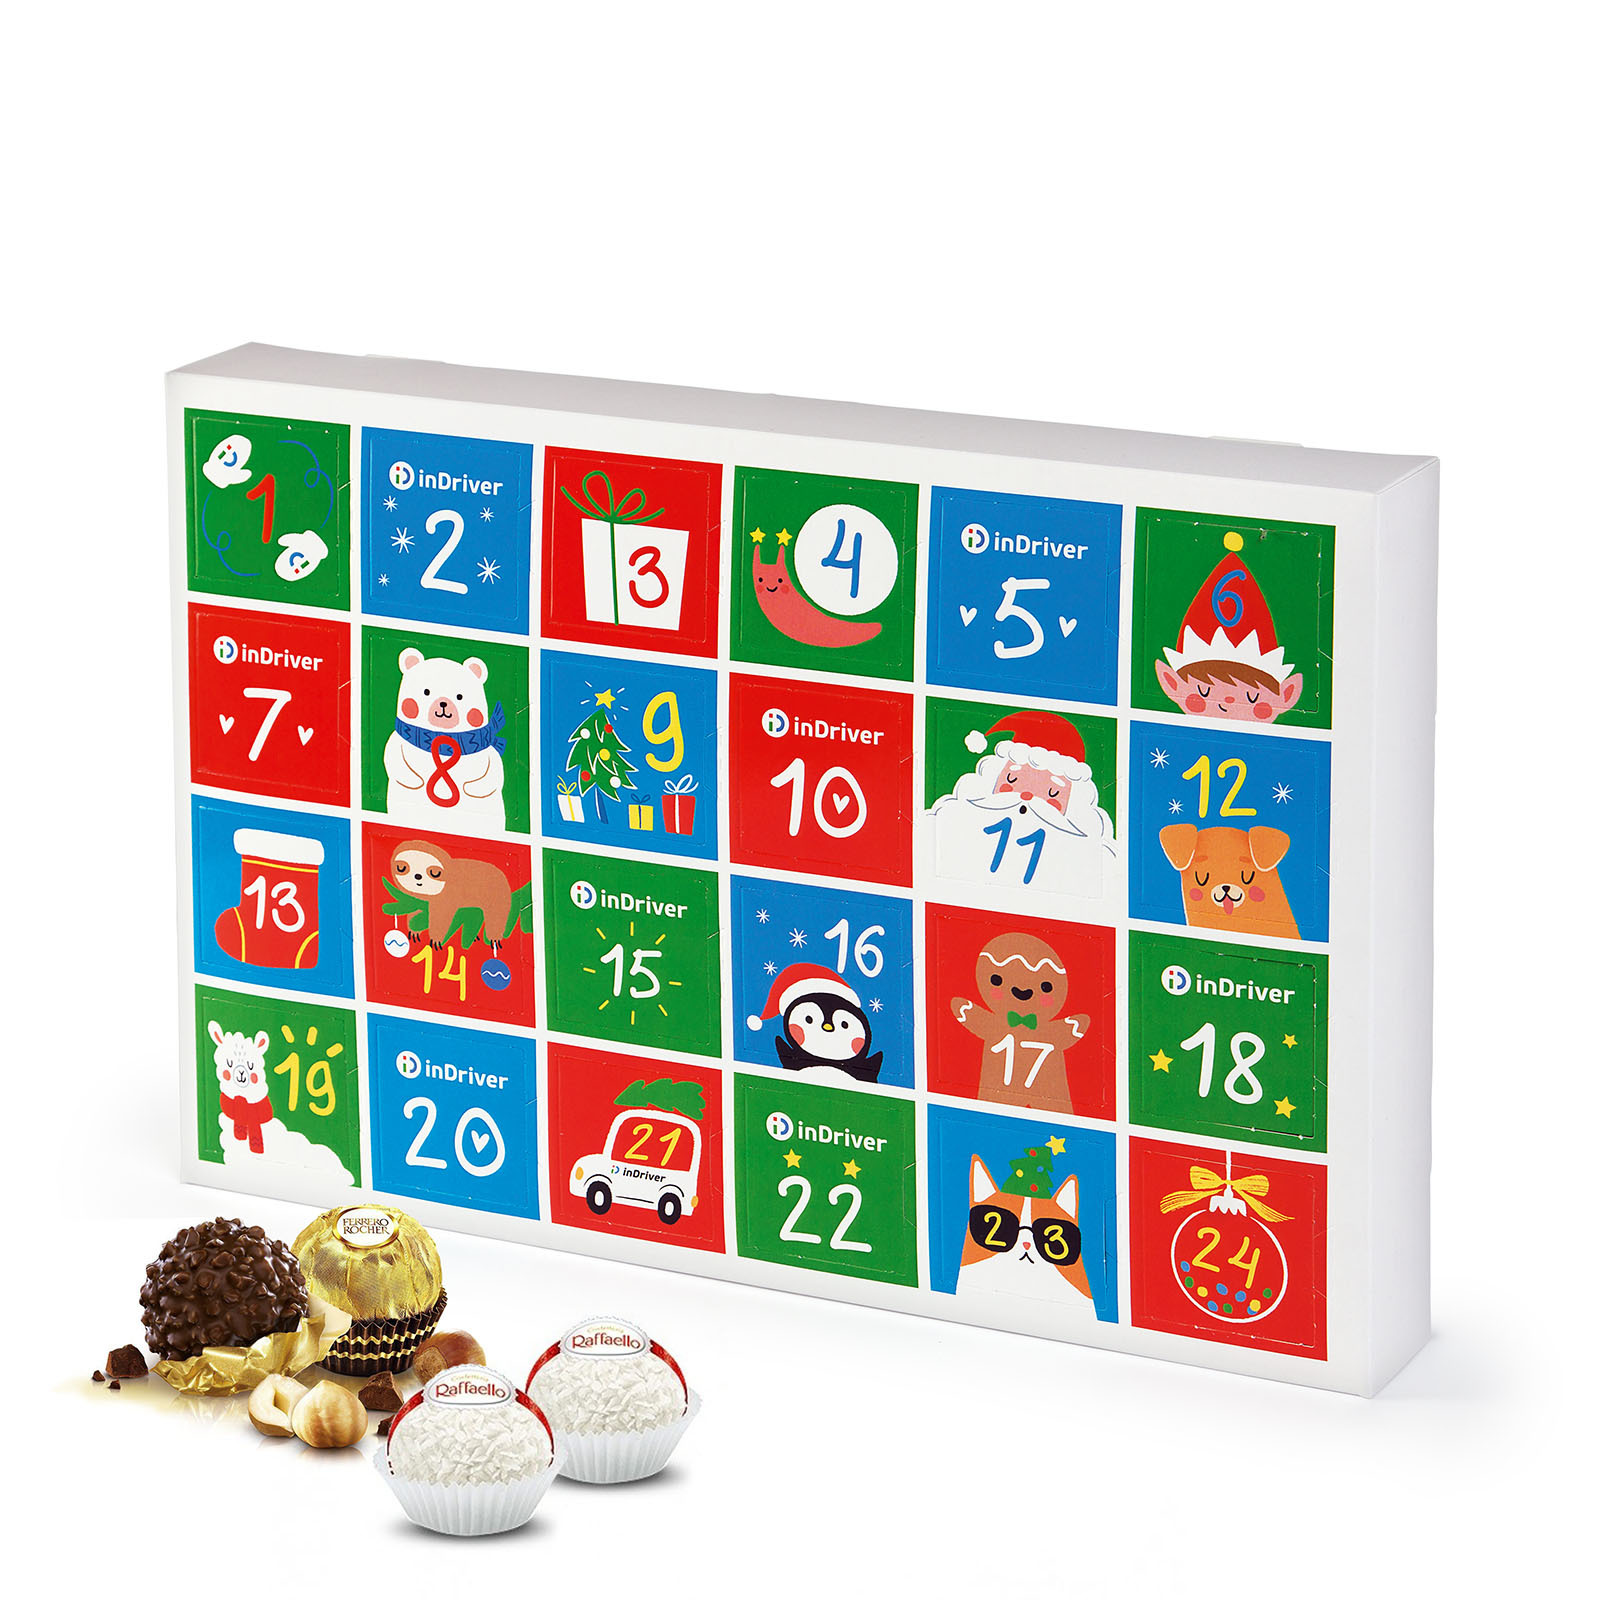 Адвент календарь на 24 конфеты Ферреро Роше для компании Indriver